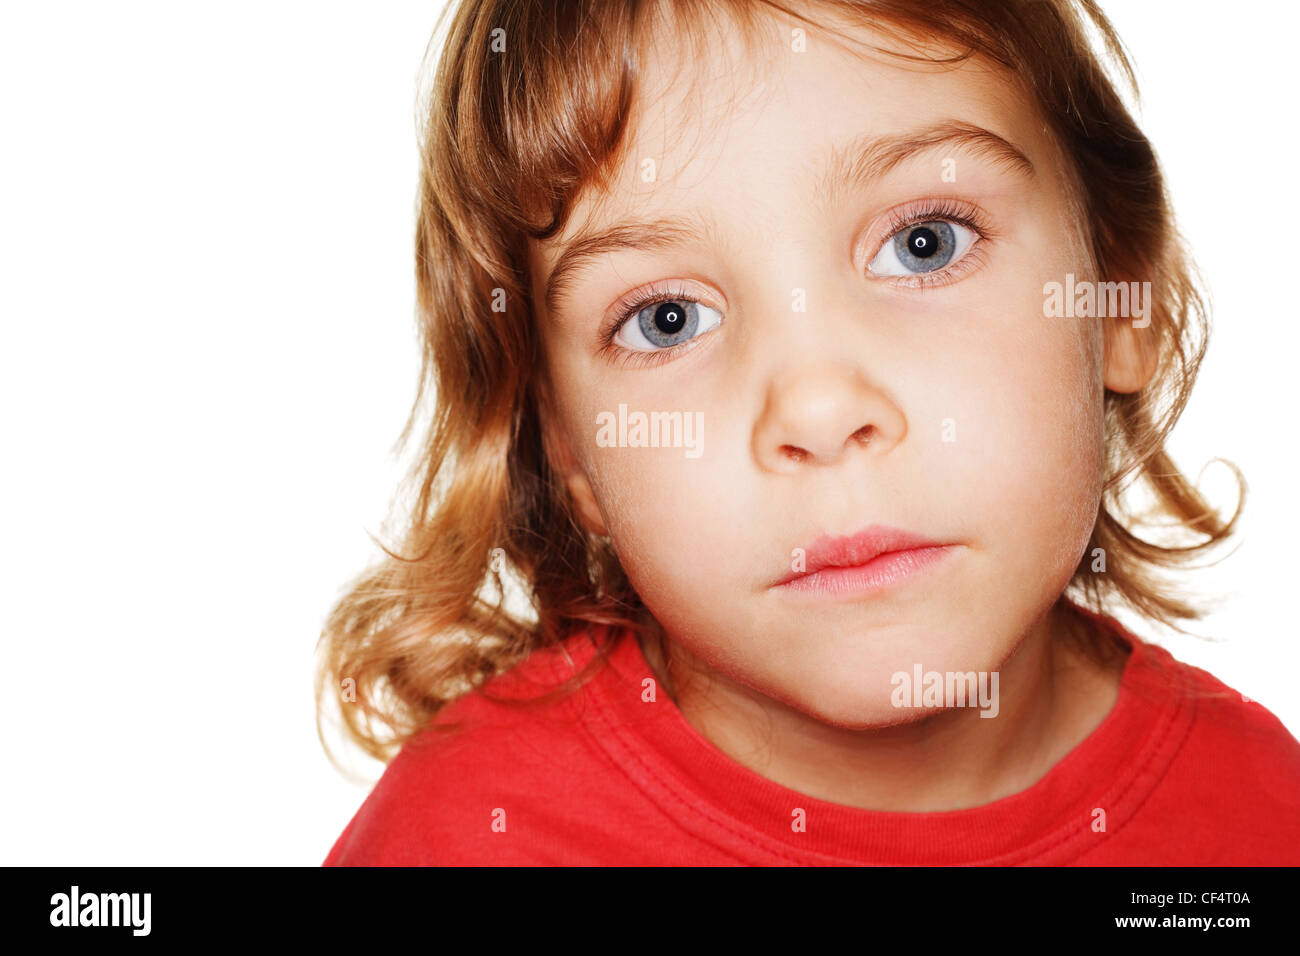 Porträt Kleinkind in einem roten T-shirt Fotostudio, Kopf nach oben. Ringblitz Stockfoto